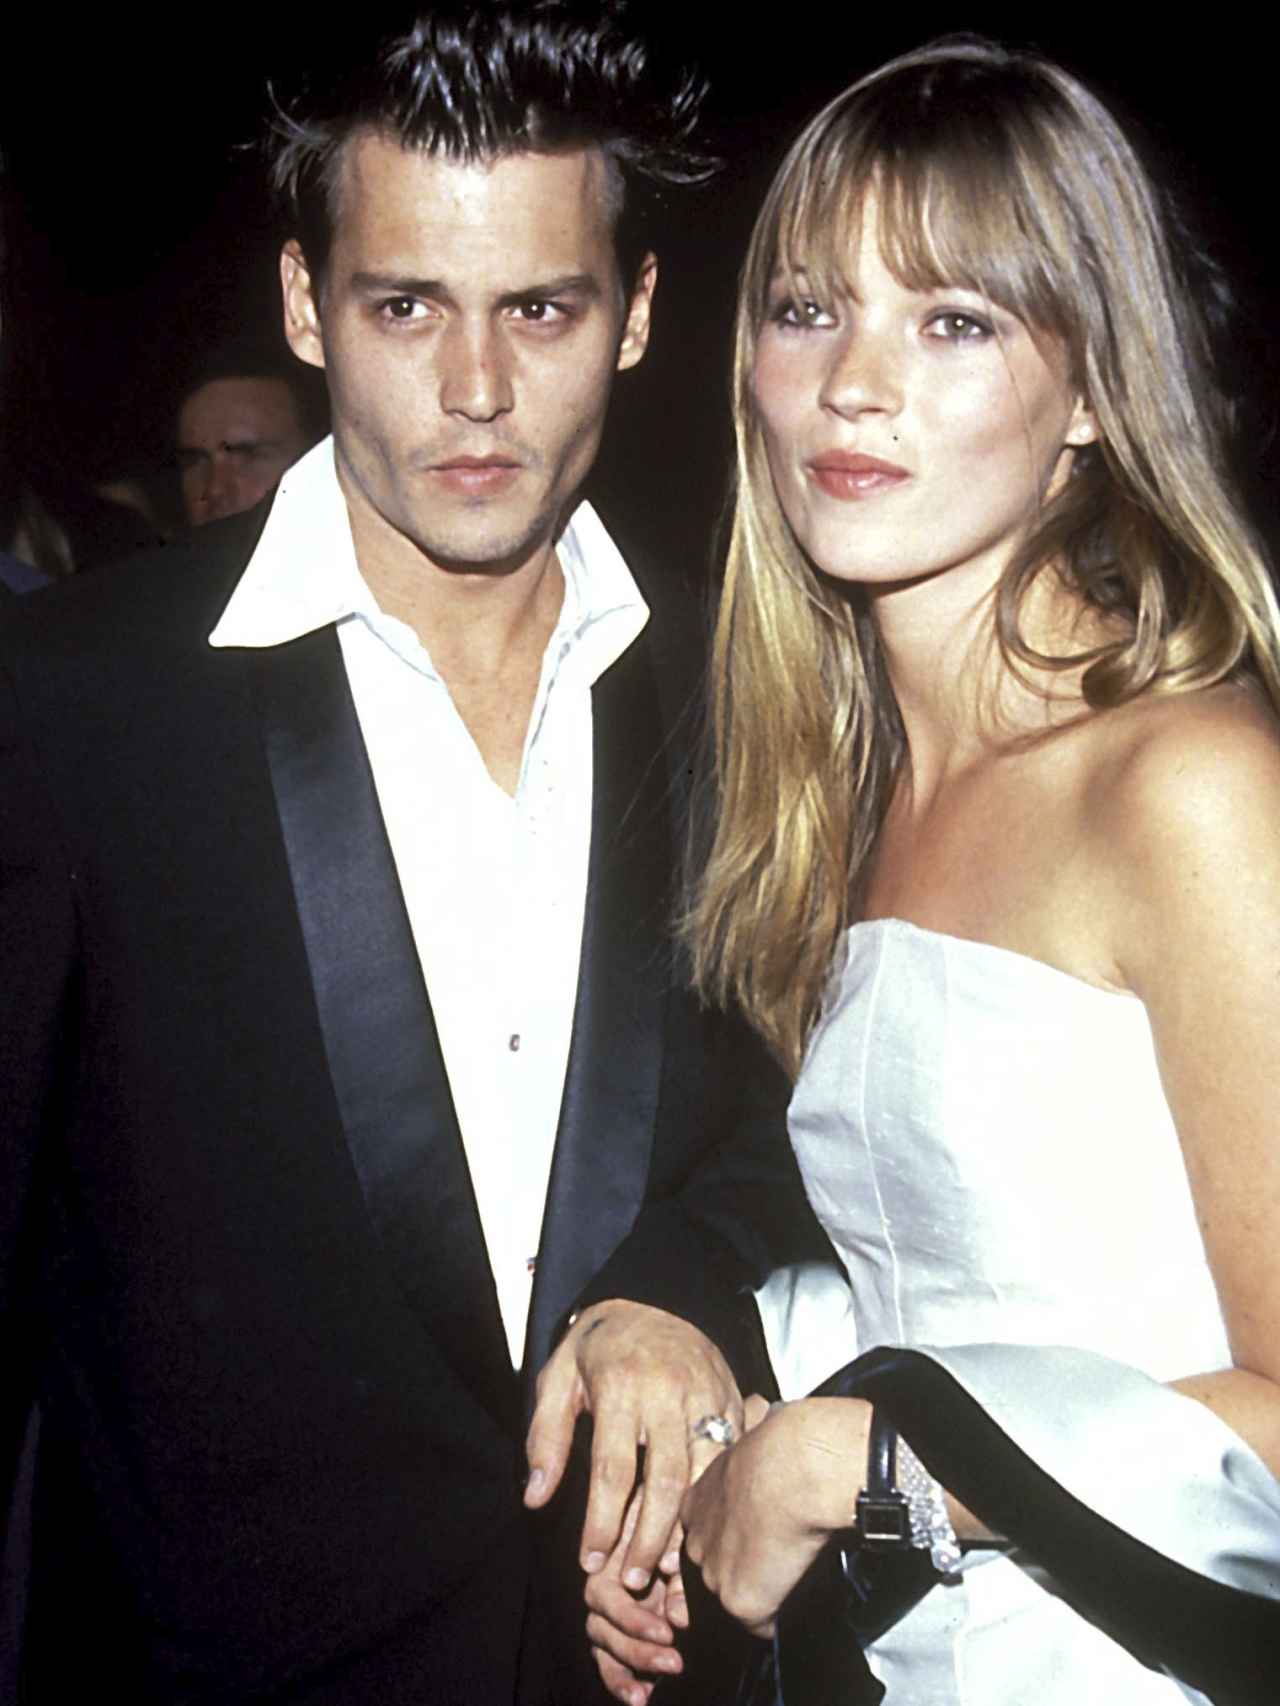 Johnny Depp y Kate Moss, en una imagen juntos en la década de los 90.